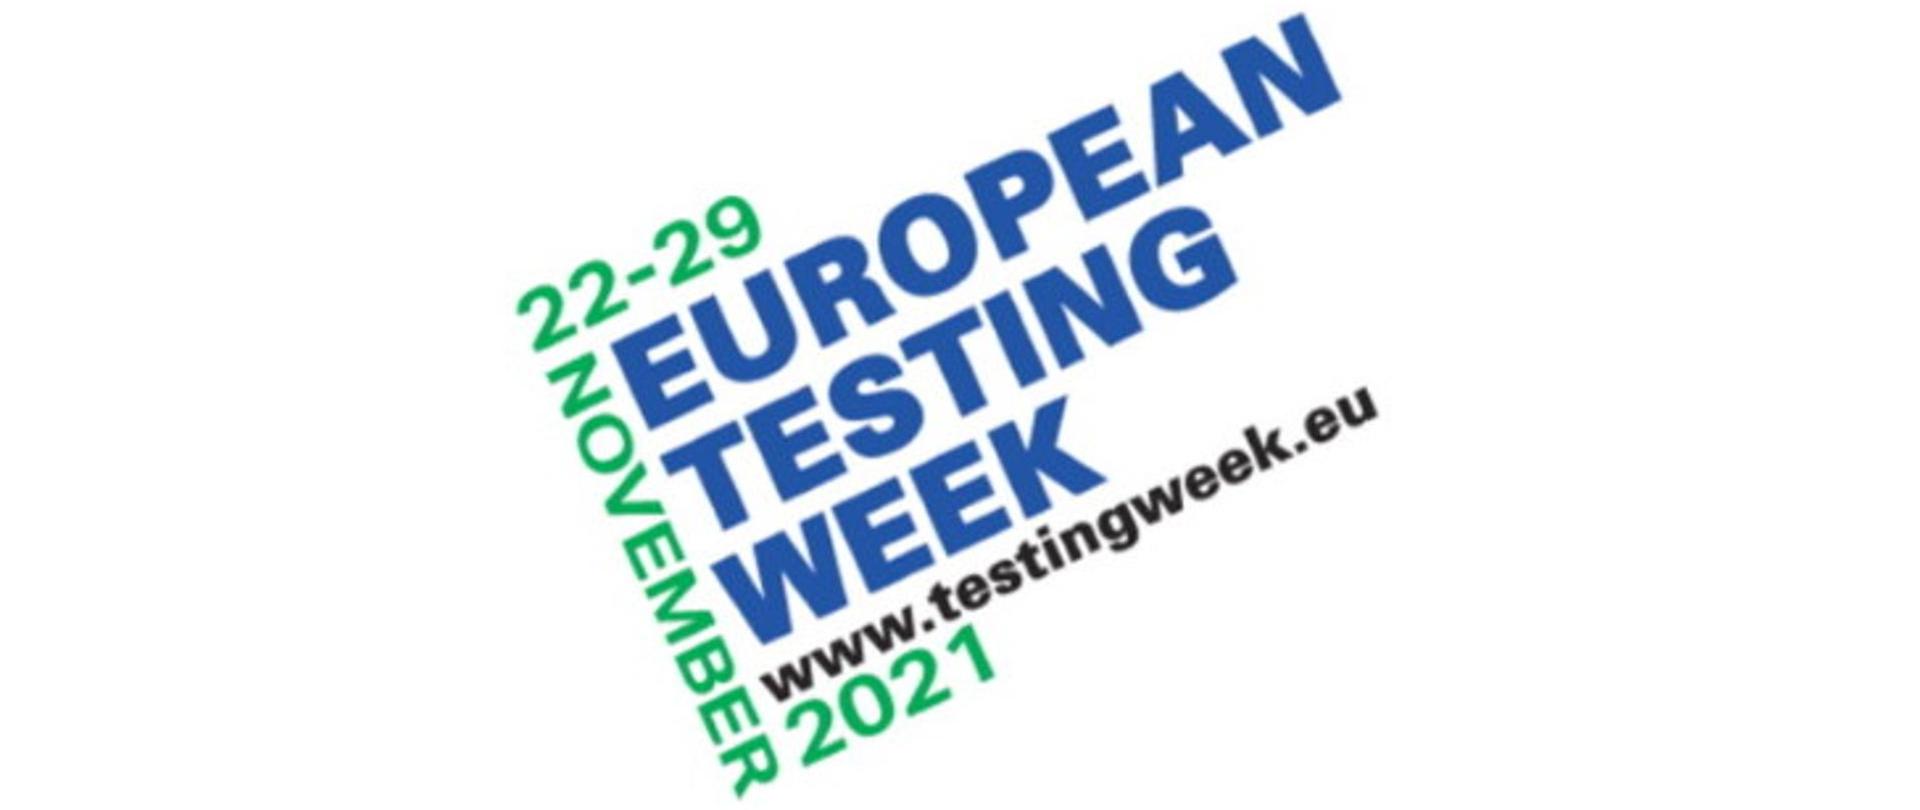 Baner z napisem: EUROPEAN TESTING WEEK 2021